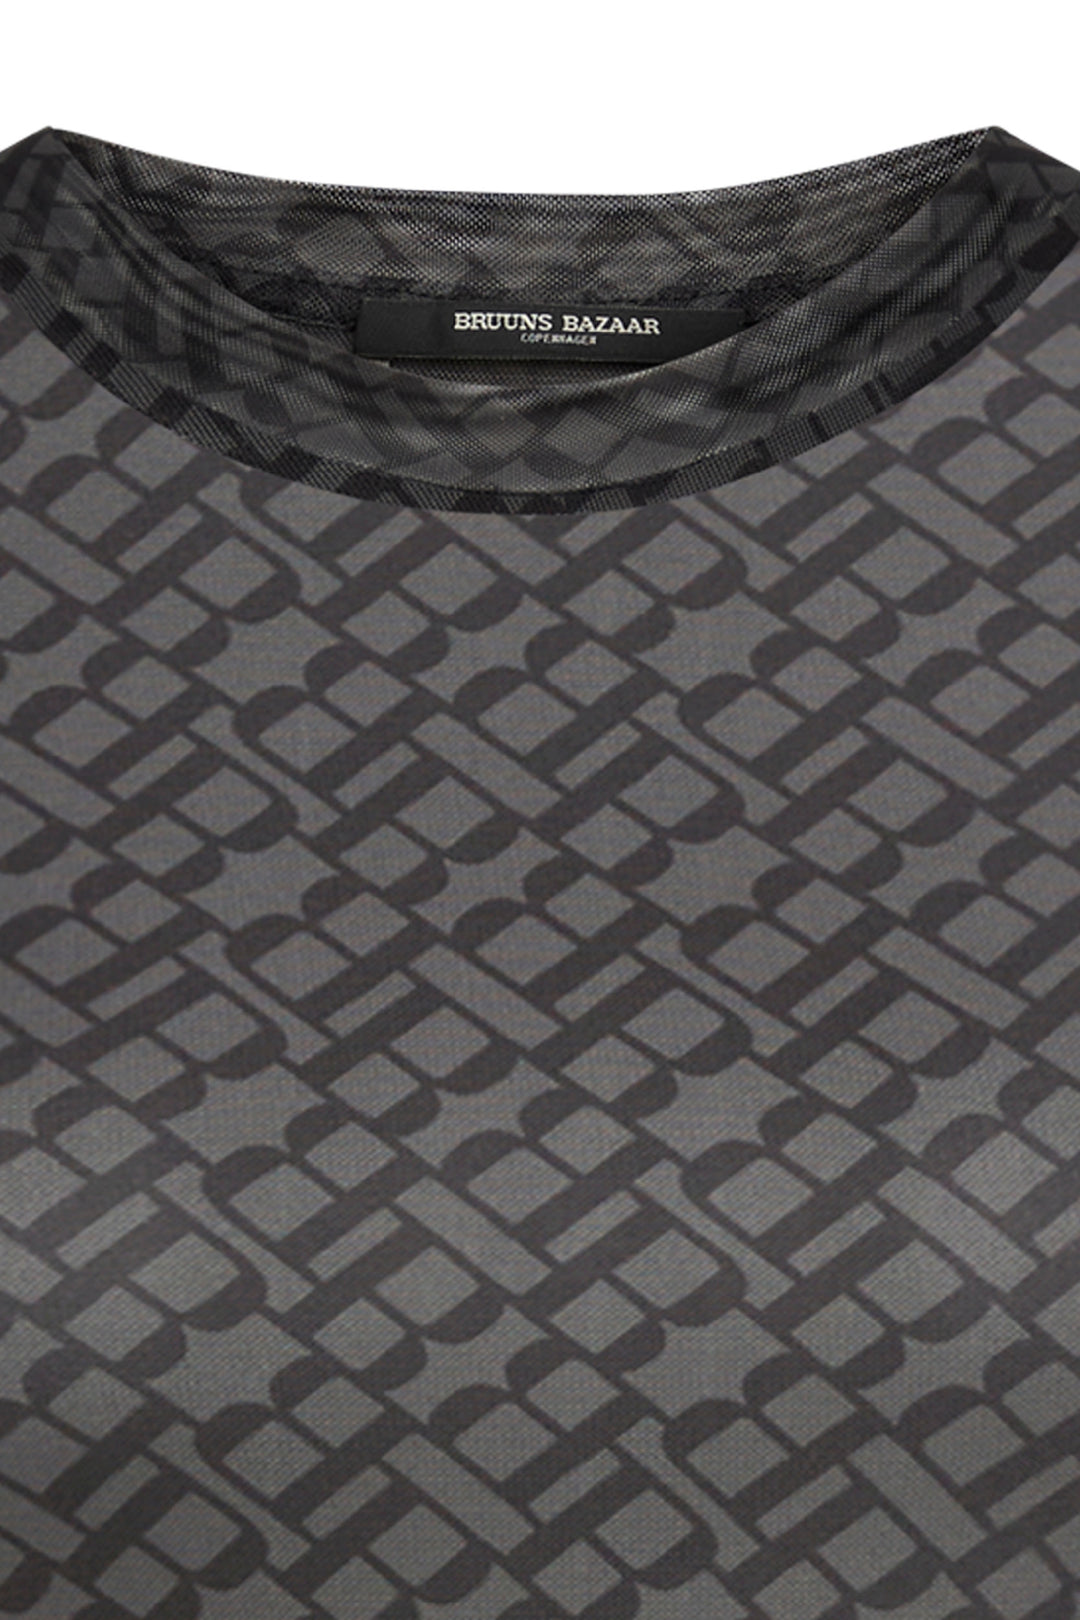 Bruuns Bazaar Women PhloxBBAstra blouse T-shirts Grey logo print